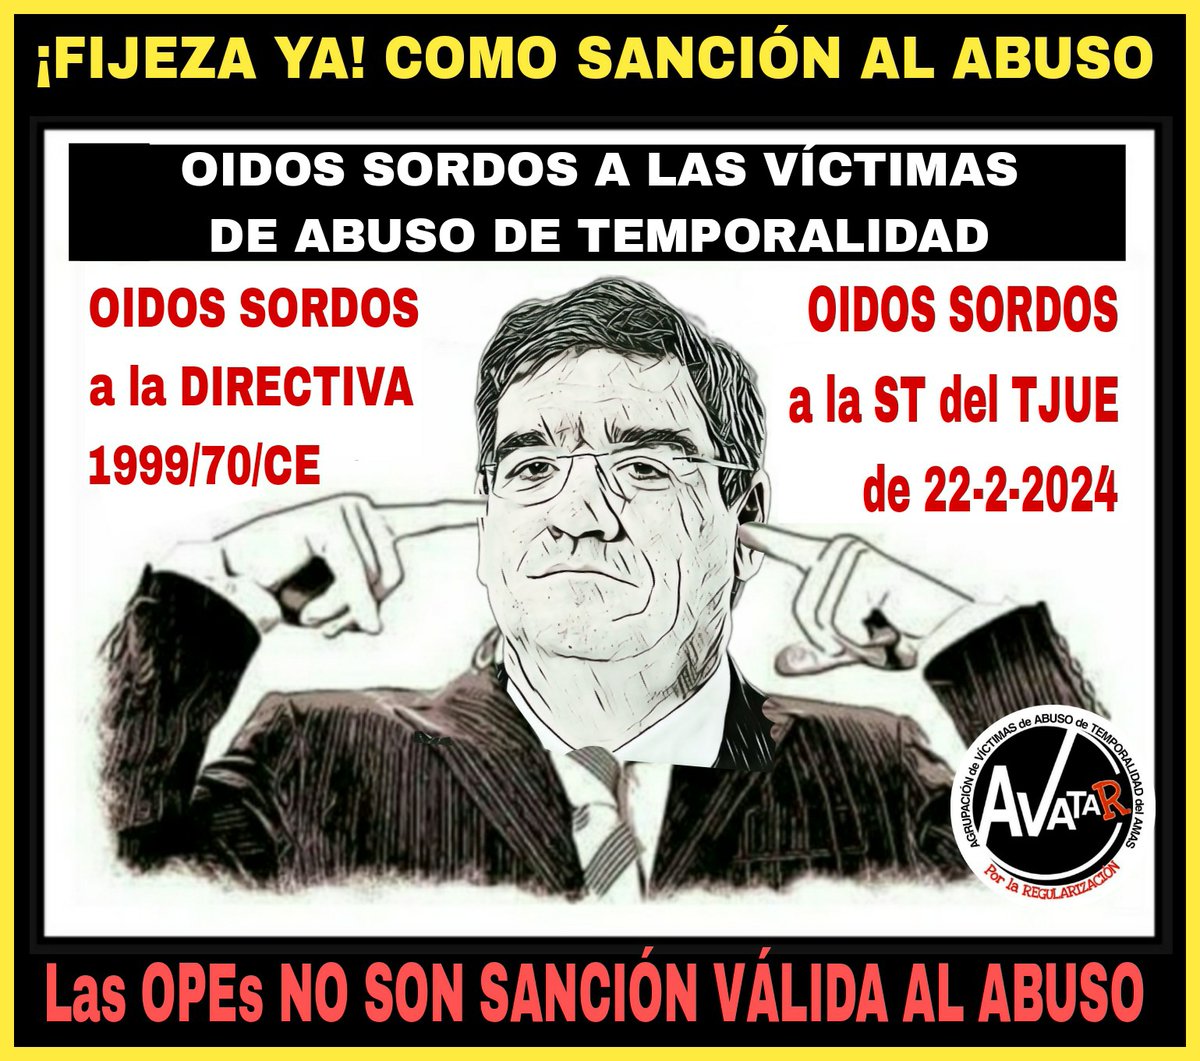 @interinoktaldea @CovaDiaz5 @sanchezcastejon @PSOE TJUE dice #FijezaYa cuando no existen medidas de sanción al abuso de temporalidad en el ordenamiento interno.